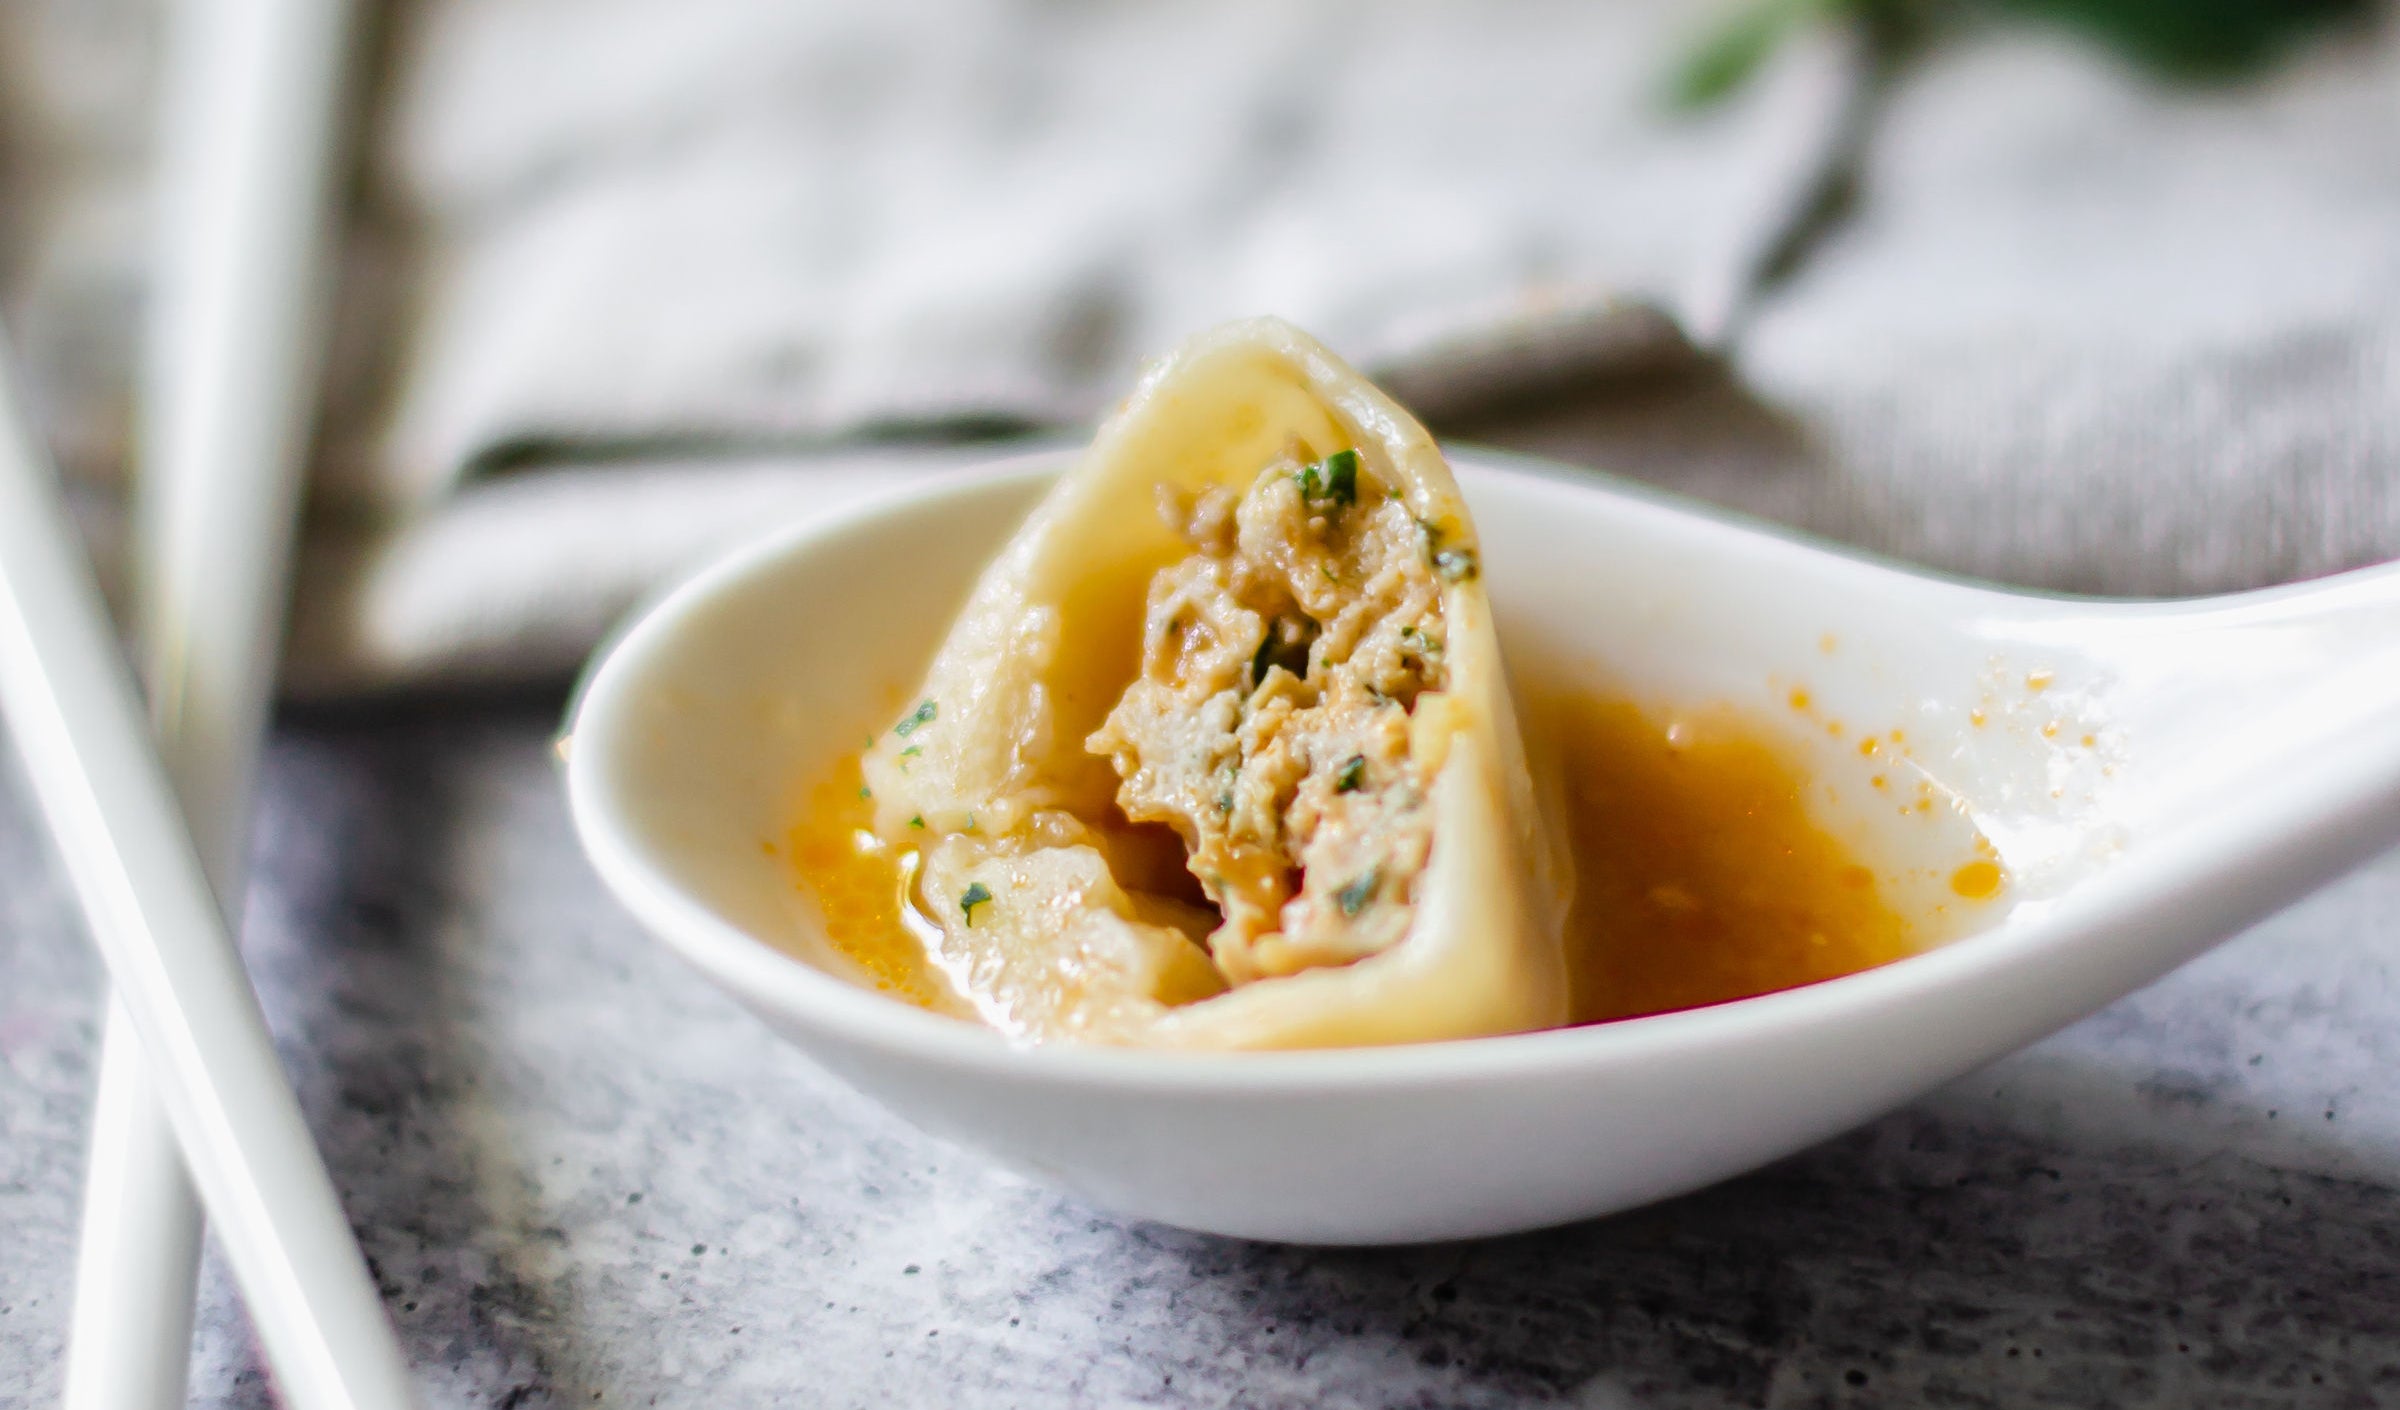 https://www.cookinggiftset.com/cdn/shop/articles/Xiao-Long-Bao-Turkey-Soup-Dumplings-Recipe-Main.jpg?v=1612549704